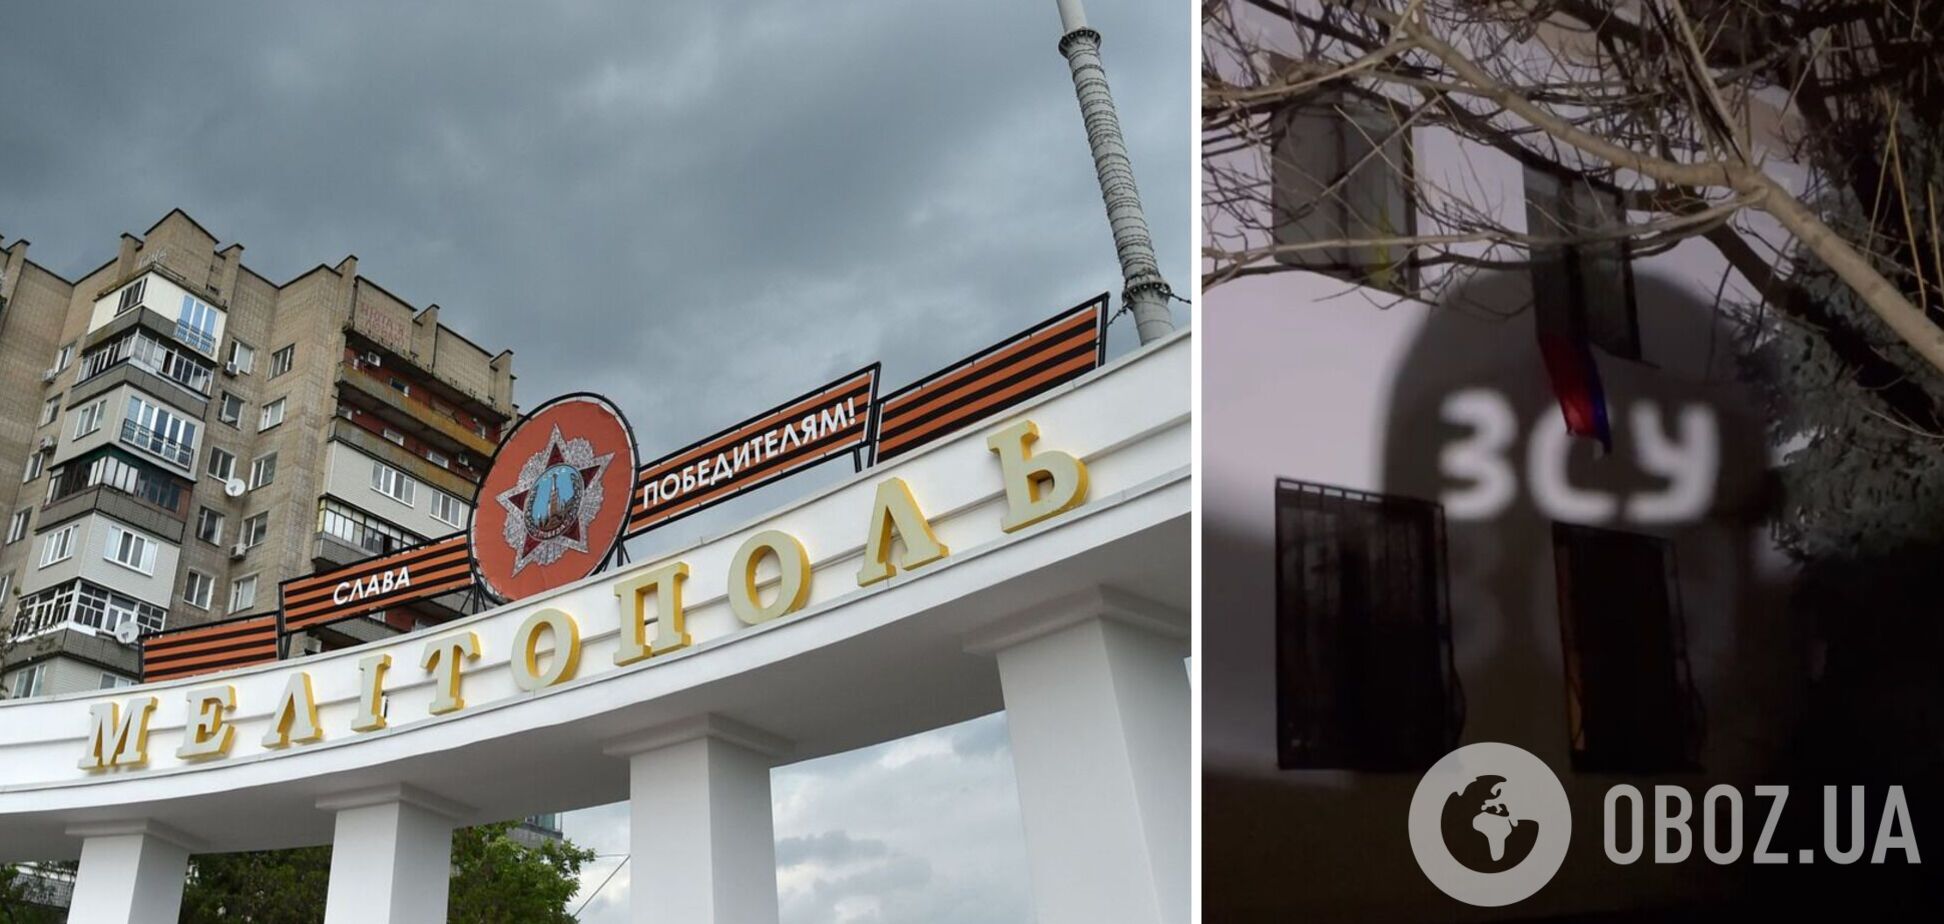 'Мелитополь ждет ВСУ': партизаны устроили смелое световое шоу возле оккупационной администрации. Видео